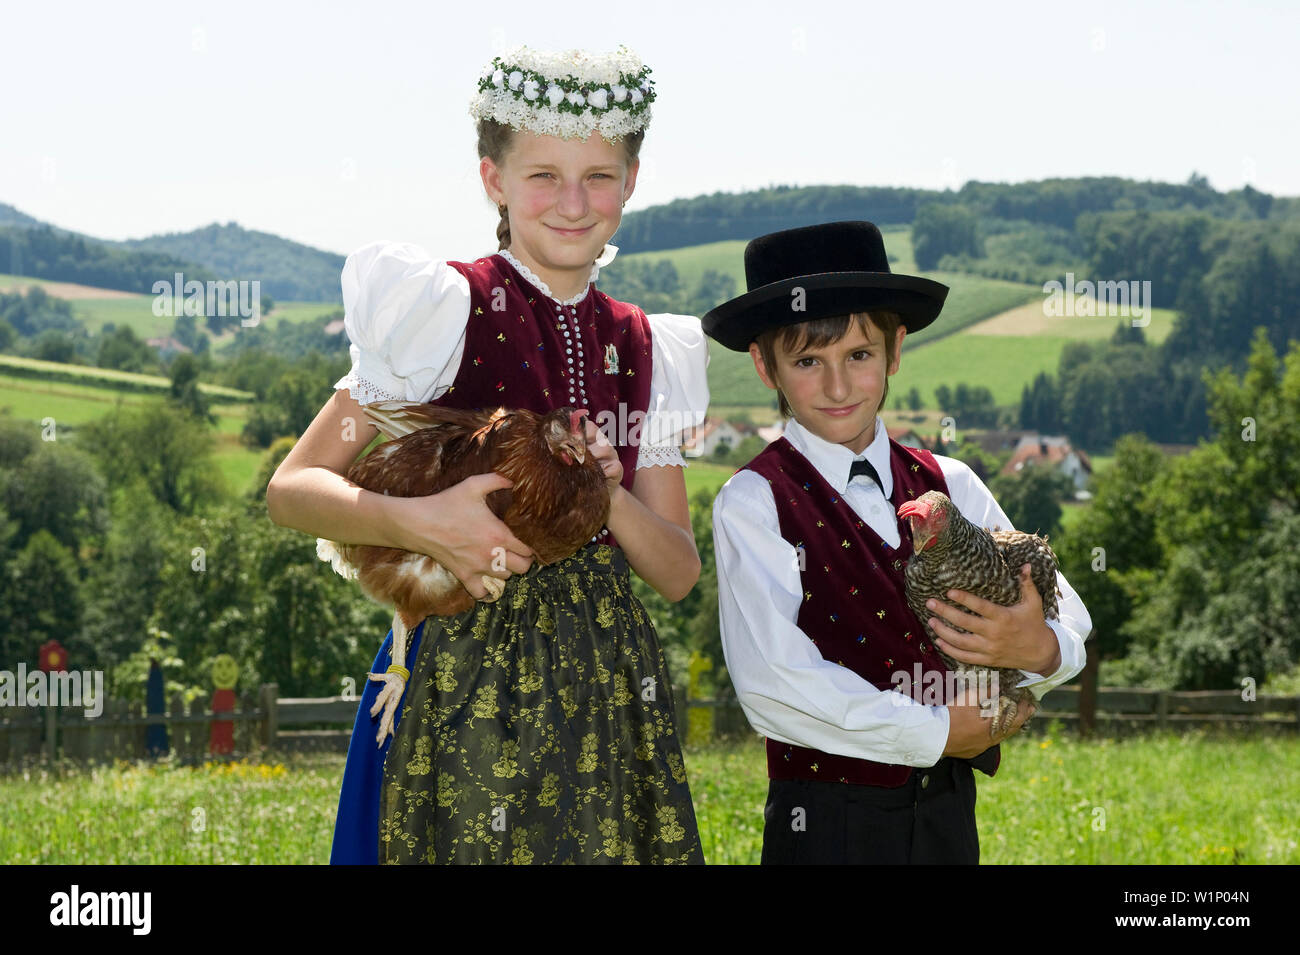 Zwei Kinder (10-13 Jahre), die traditionelle Kleidung, Gottertal Schwarzwald, Baden-Württemberg, Deutschland Stockfoto